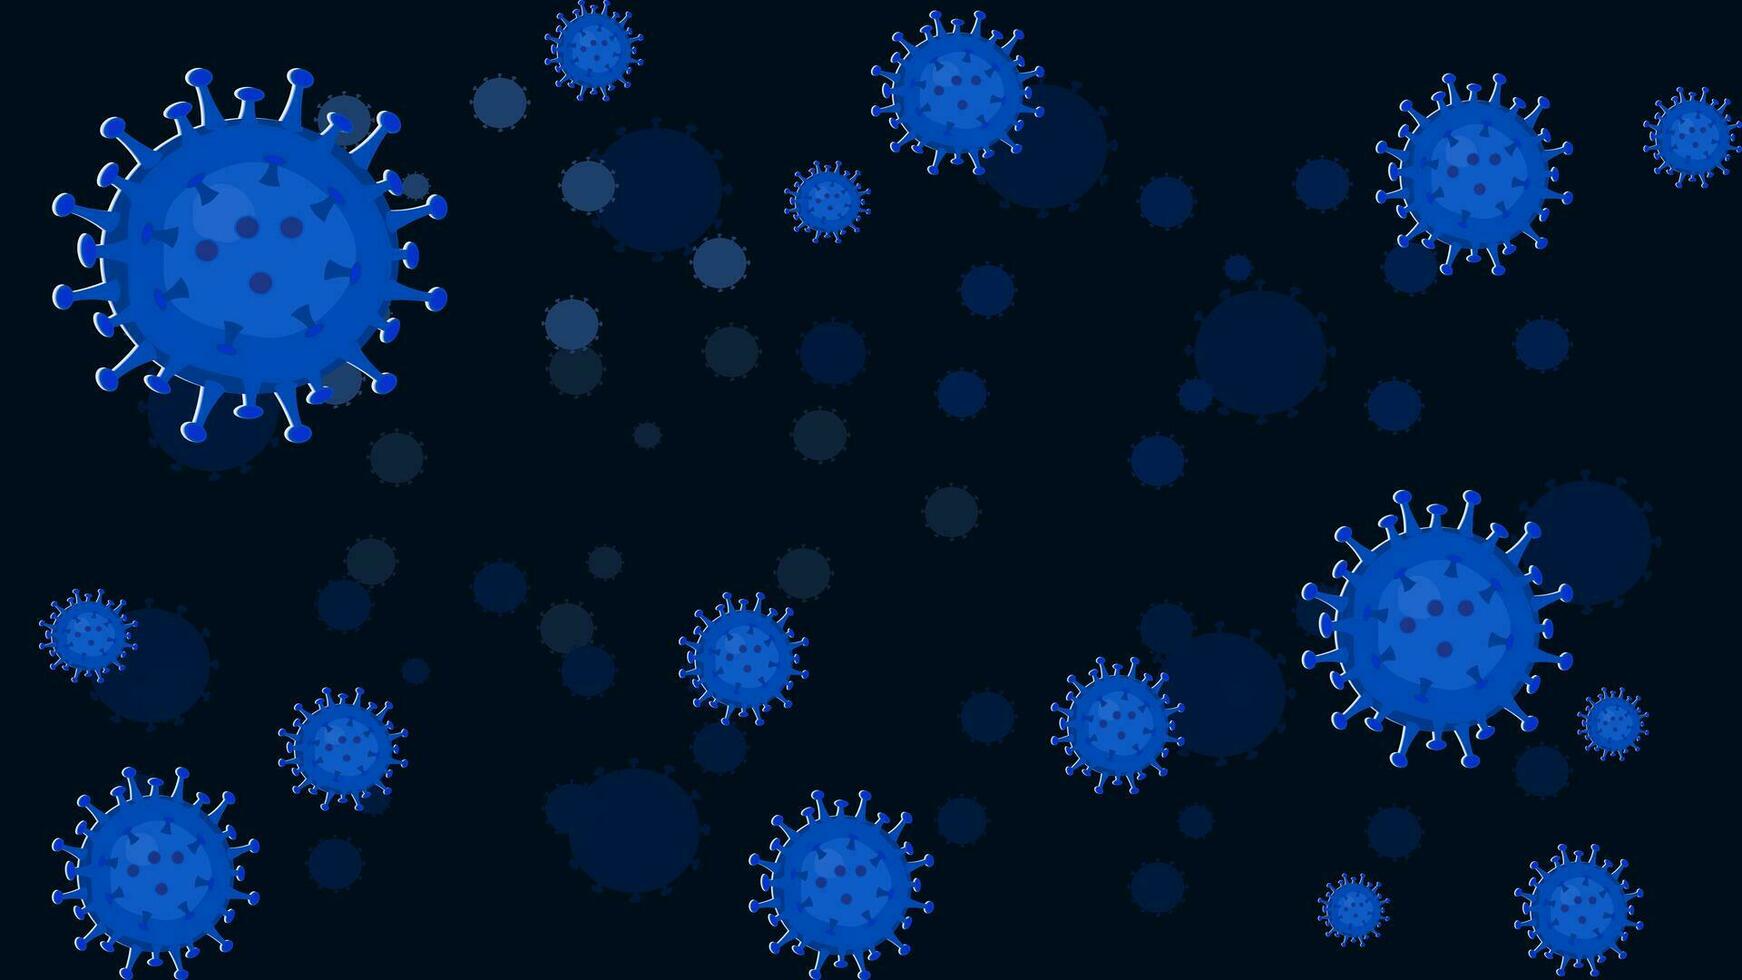 peligroso virus codicioso 2019 coronavirus bacterias modelo bandera vector